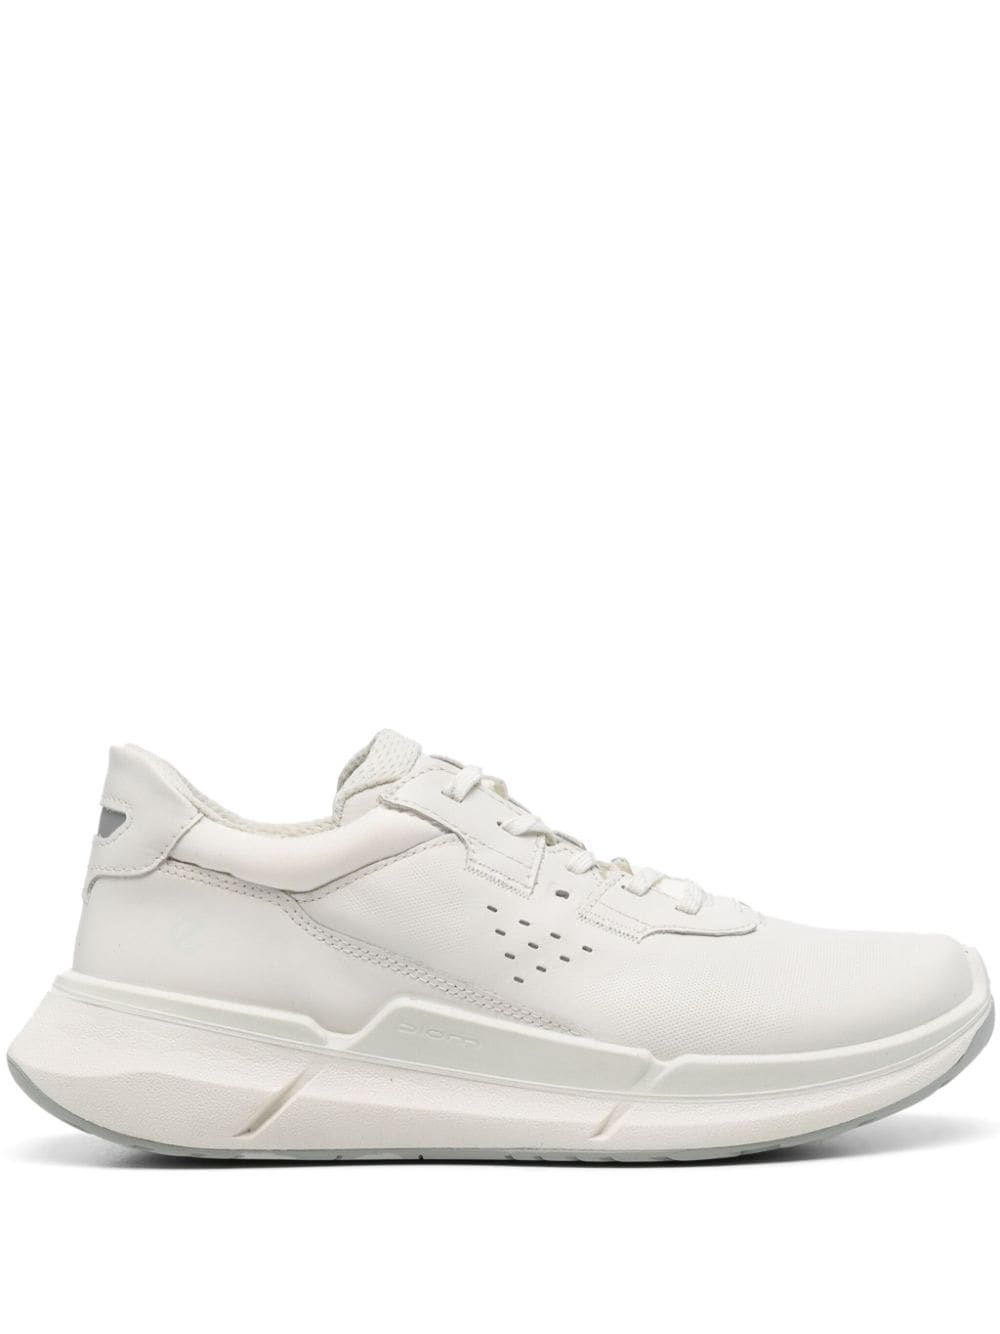 ECCO BIOM 2.2 W leather sneakers - White von ECCO